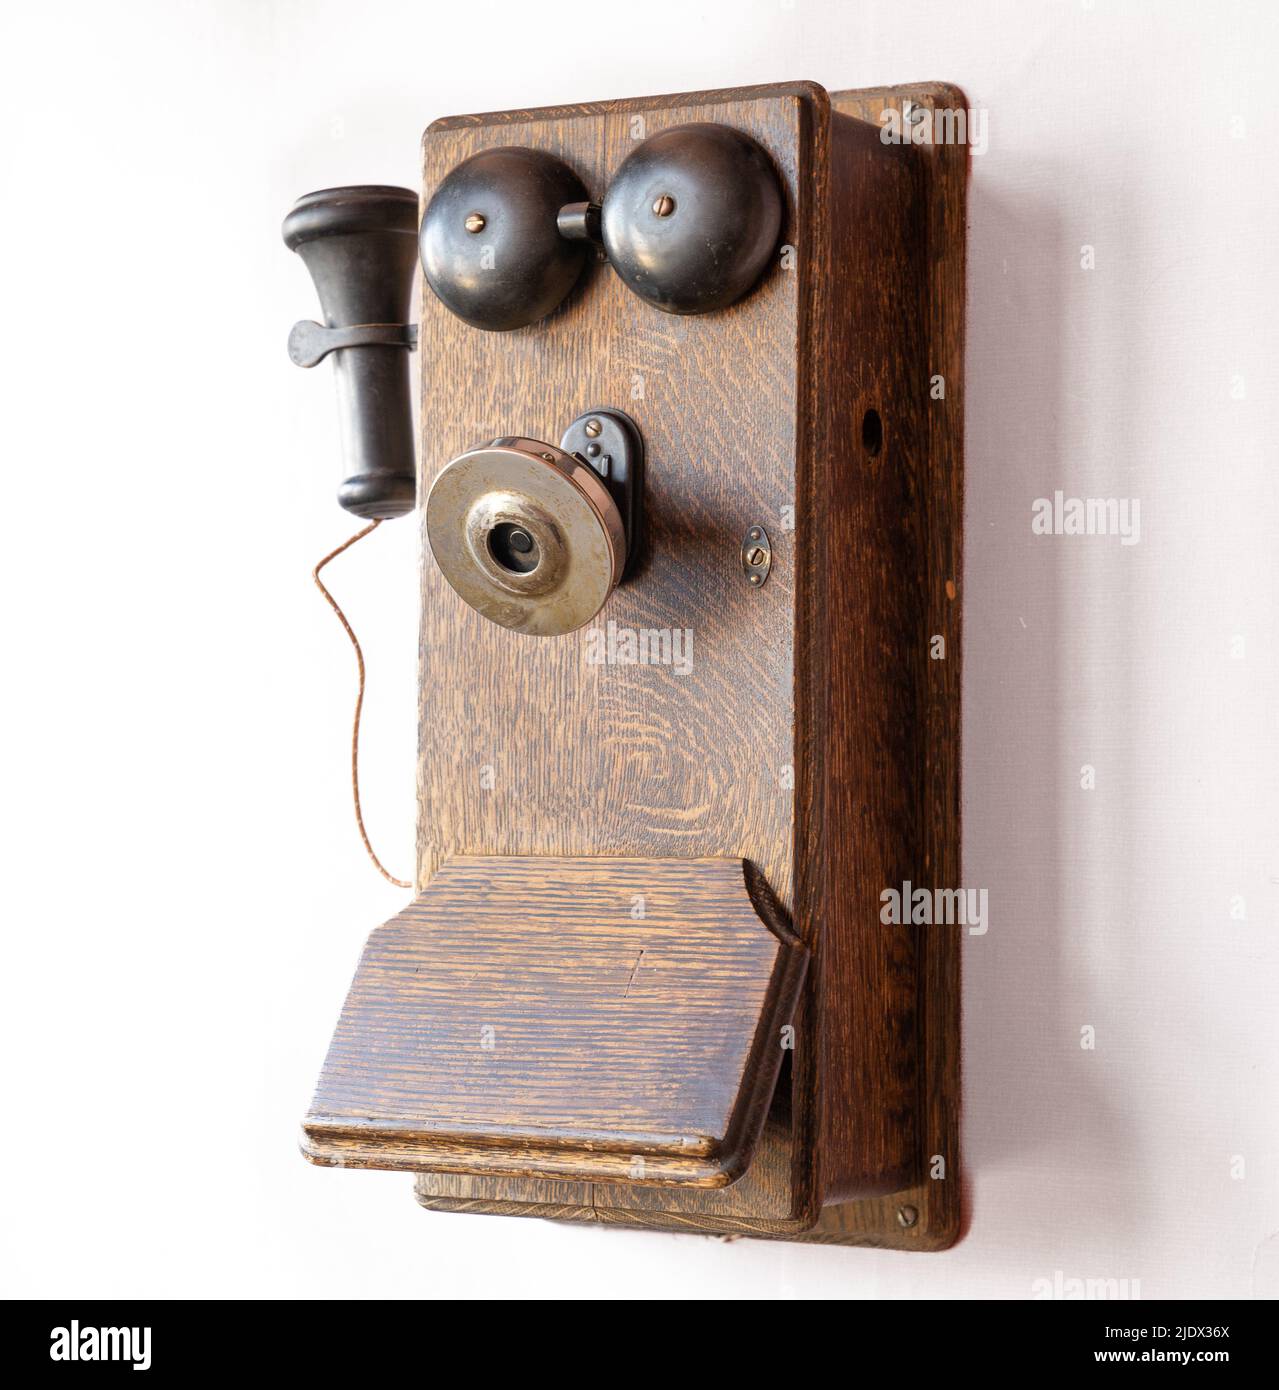 Antiguo teléfono de madera obsoleta montado en la pared Foto de stock